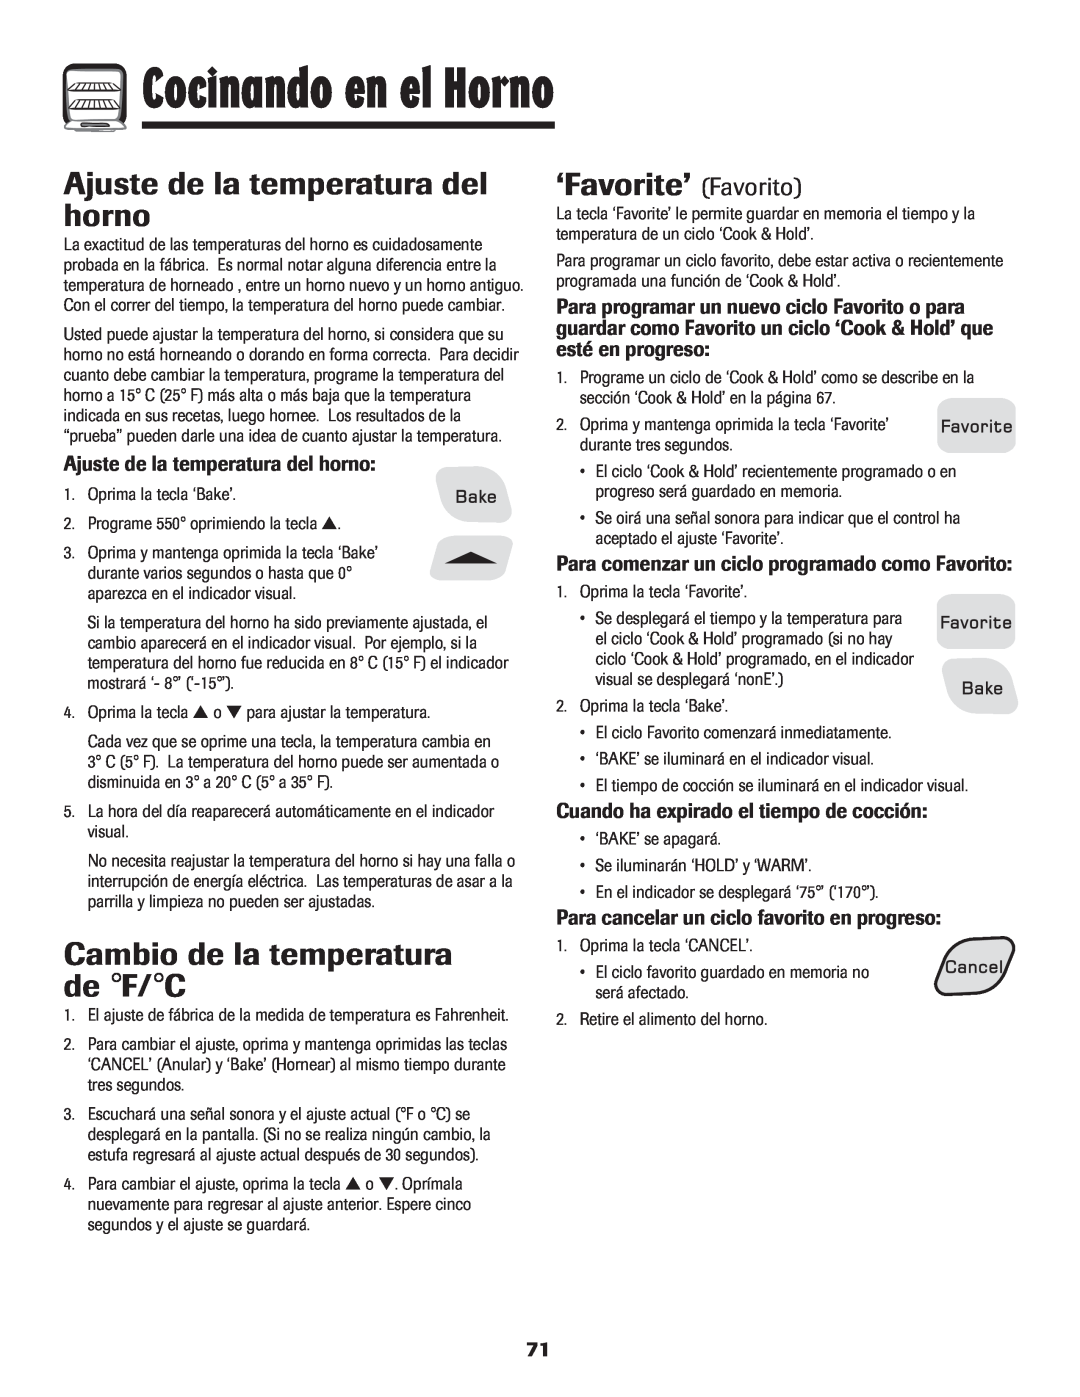 Amana 8113P454-60 warranty Ajuste de la temperatura del horno, ‘Favorite’ Favorito, Cambio de la temperatura de F/C 